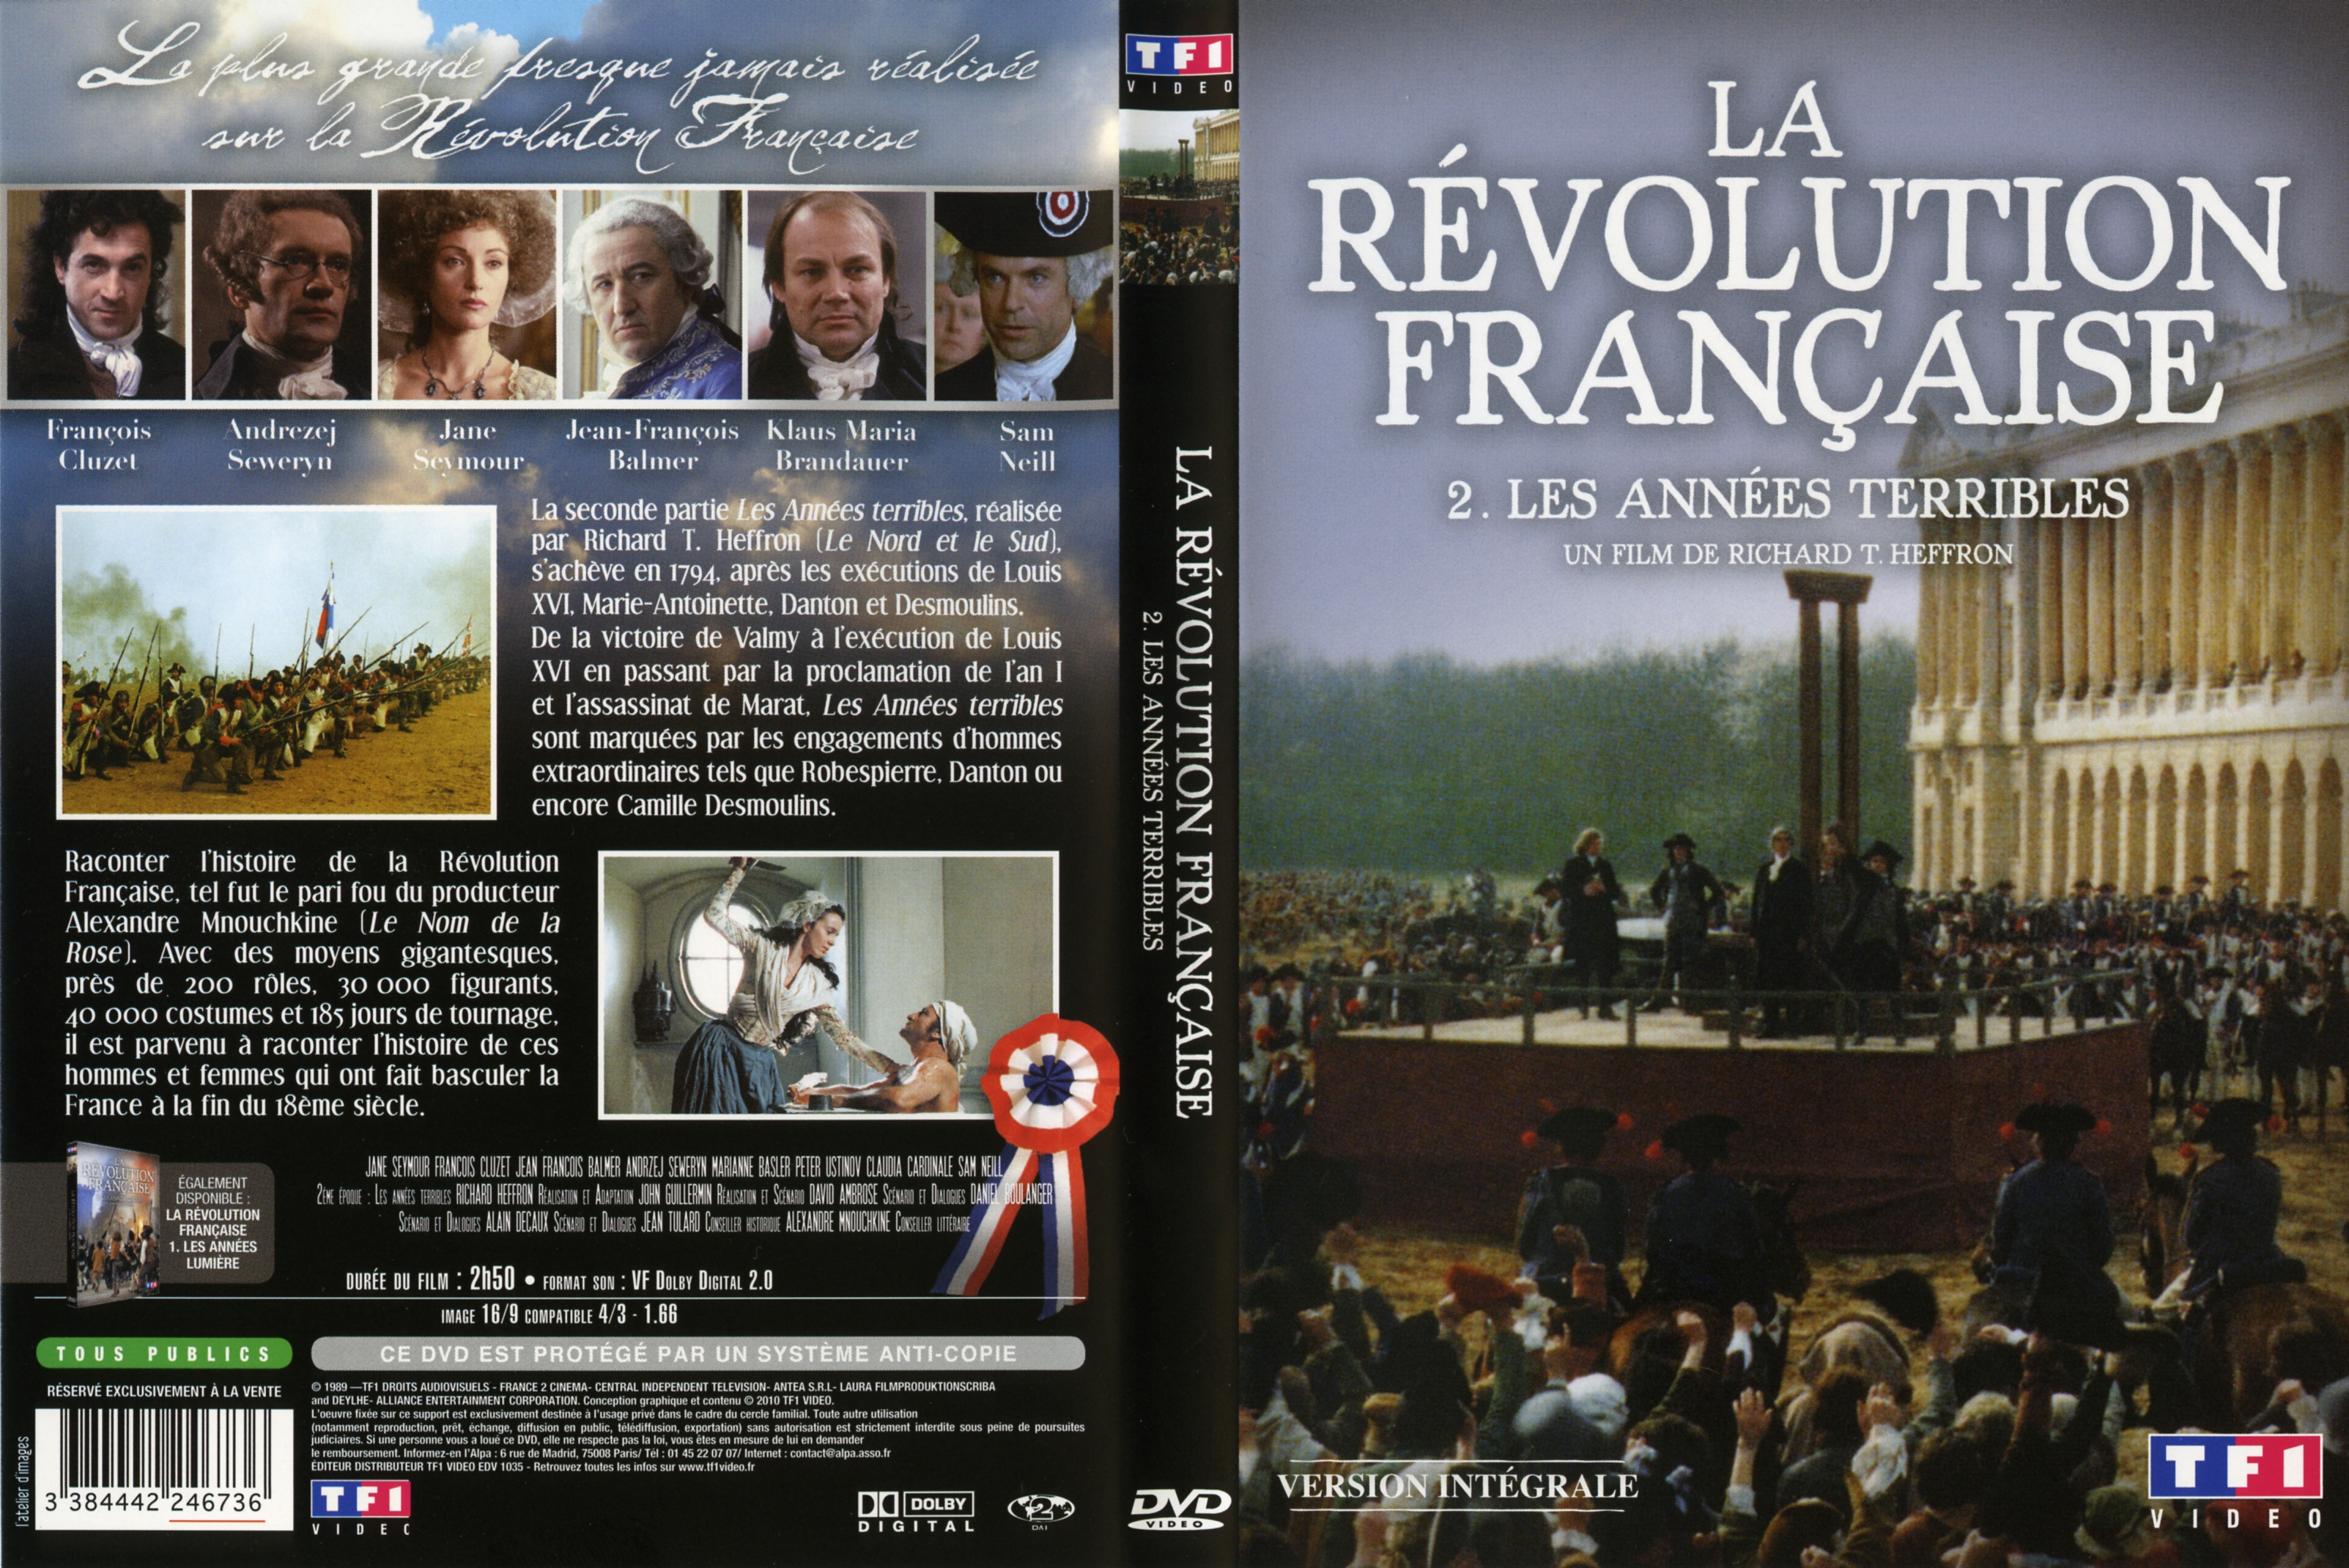 Jaquette DVD La rvolution Francaise DVD 2